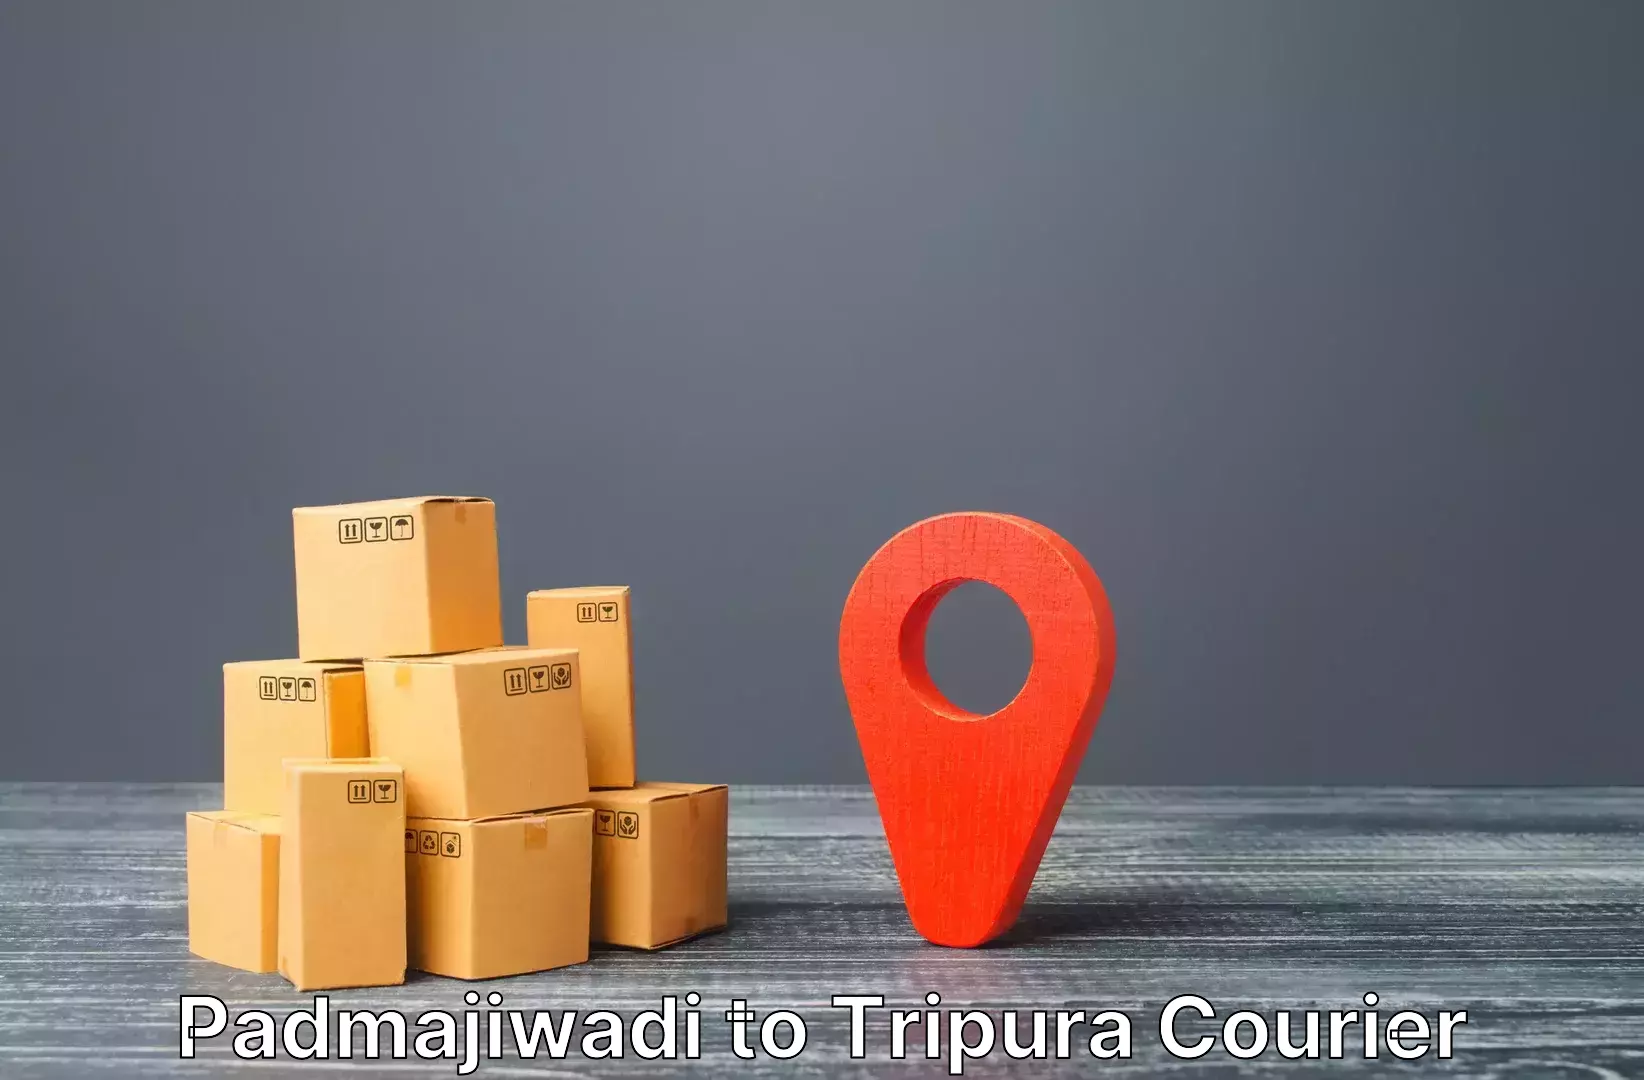 Baggage shipping service Padmajiwadi to Kailashahar